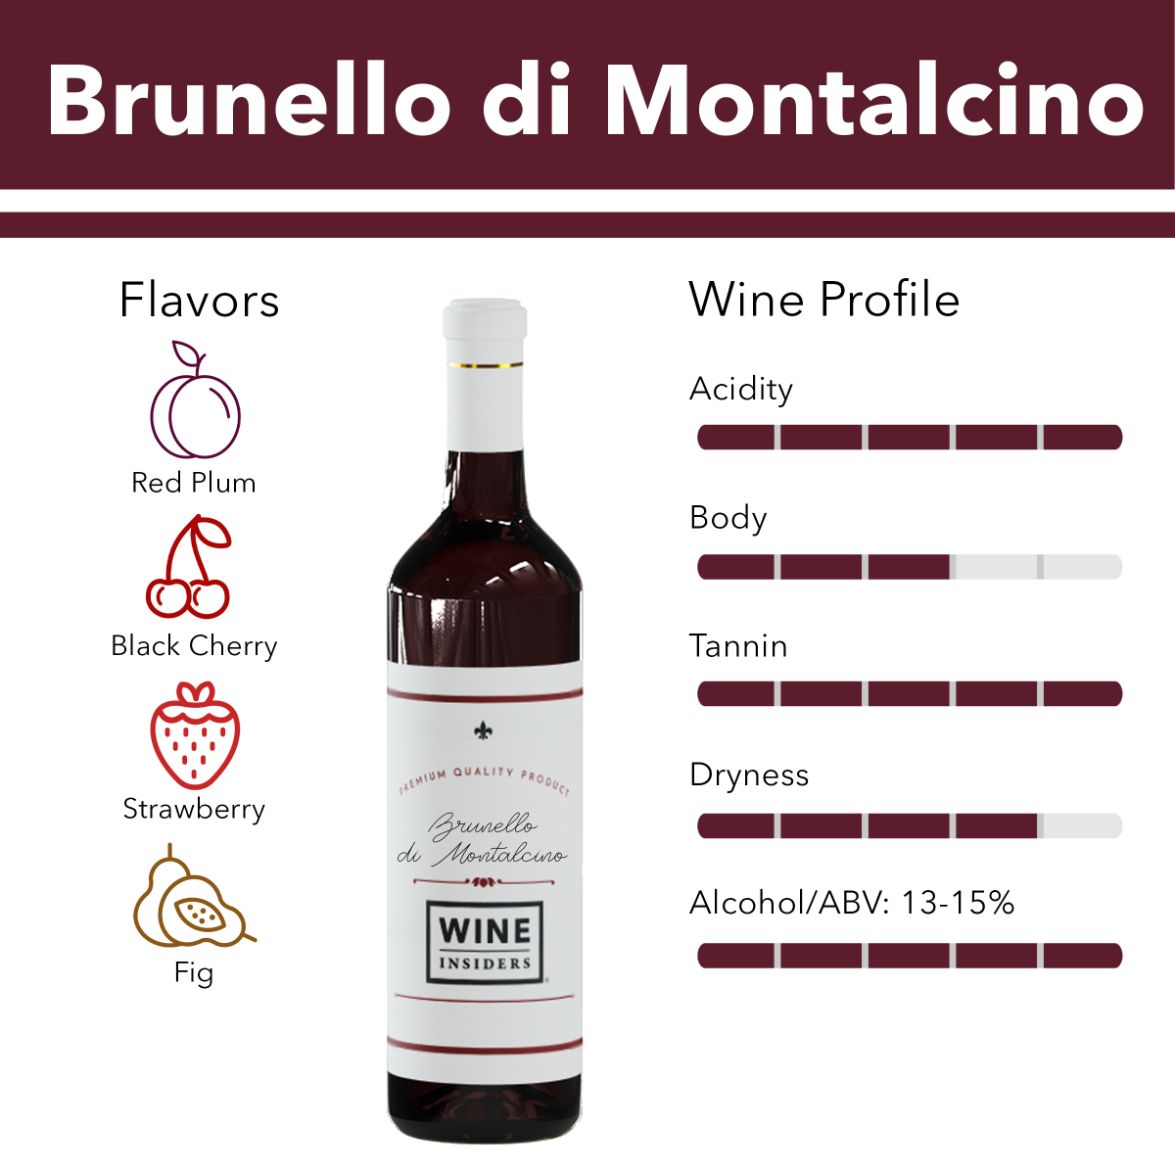 Brunello di Montalcino flavor profile